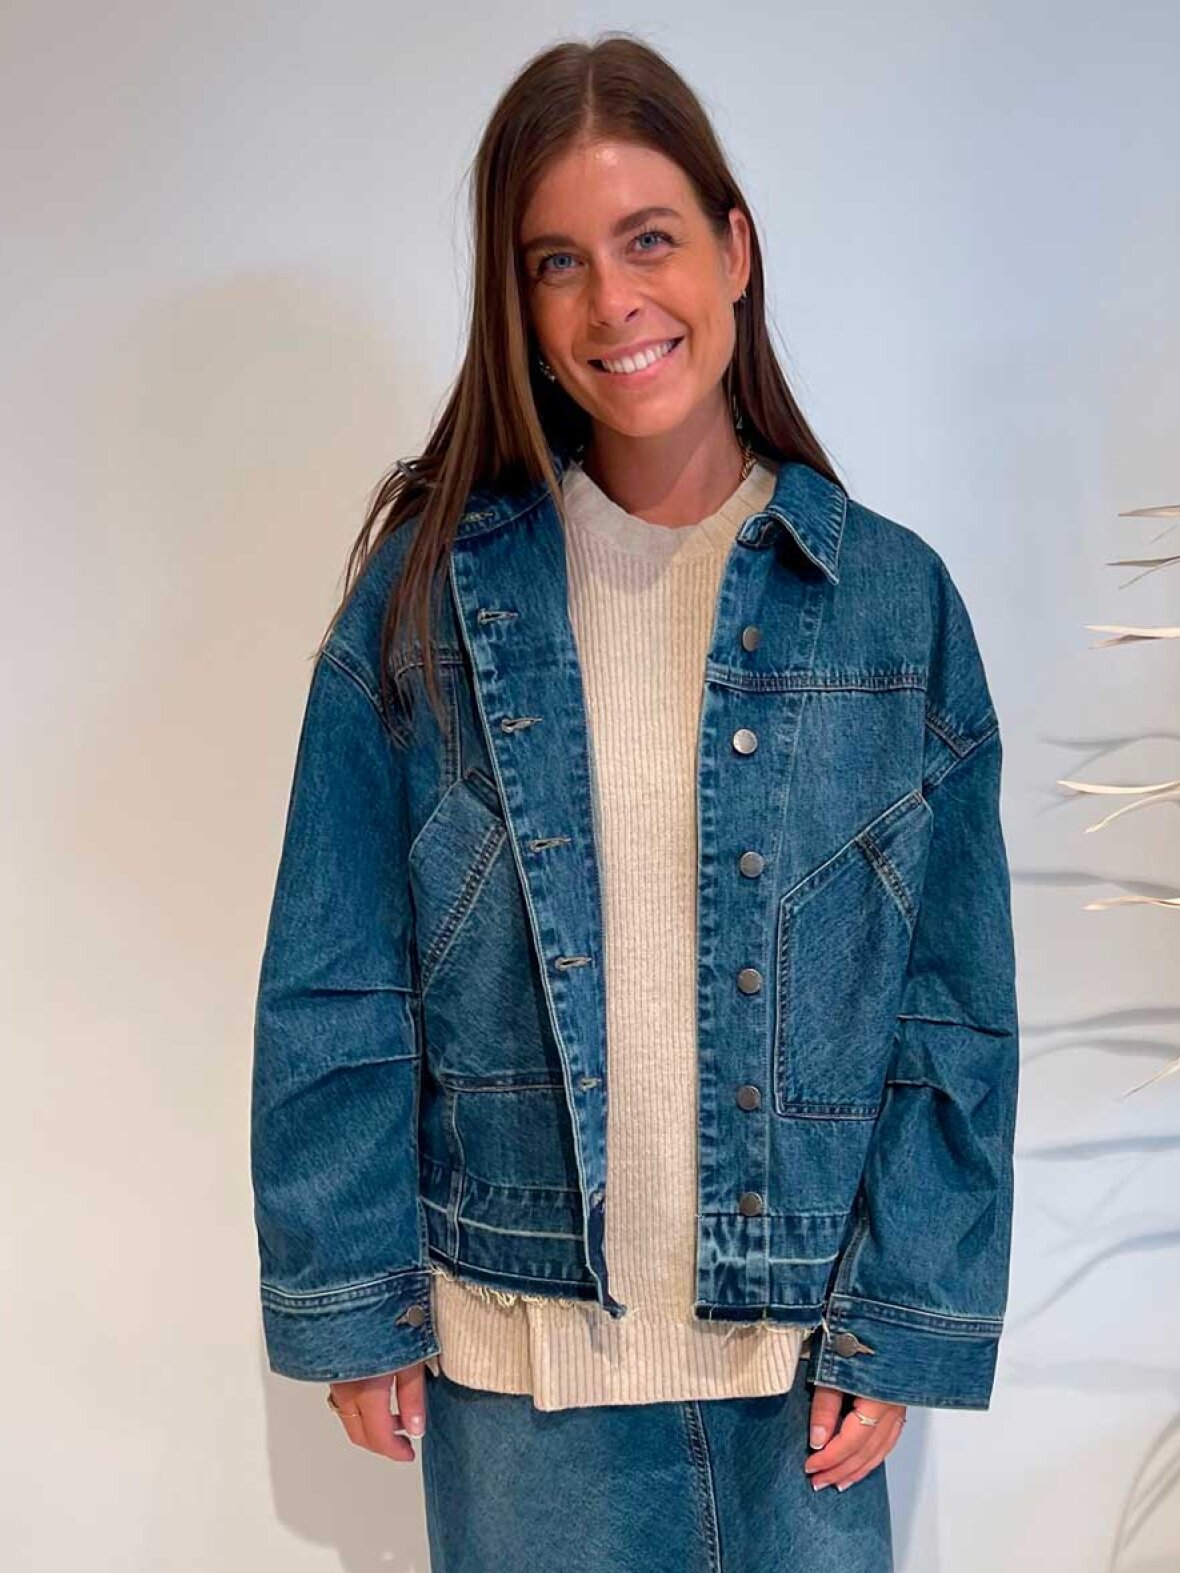 Ashley Furman Flock Perle A'POKE - Rabens Saloner Koi Shirt Jacket Washed indigo